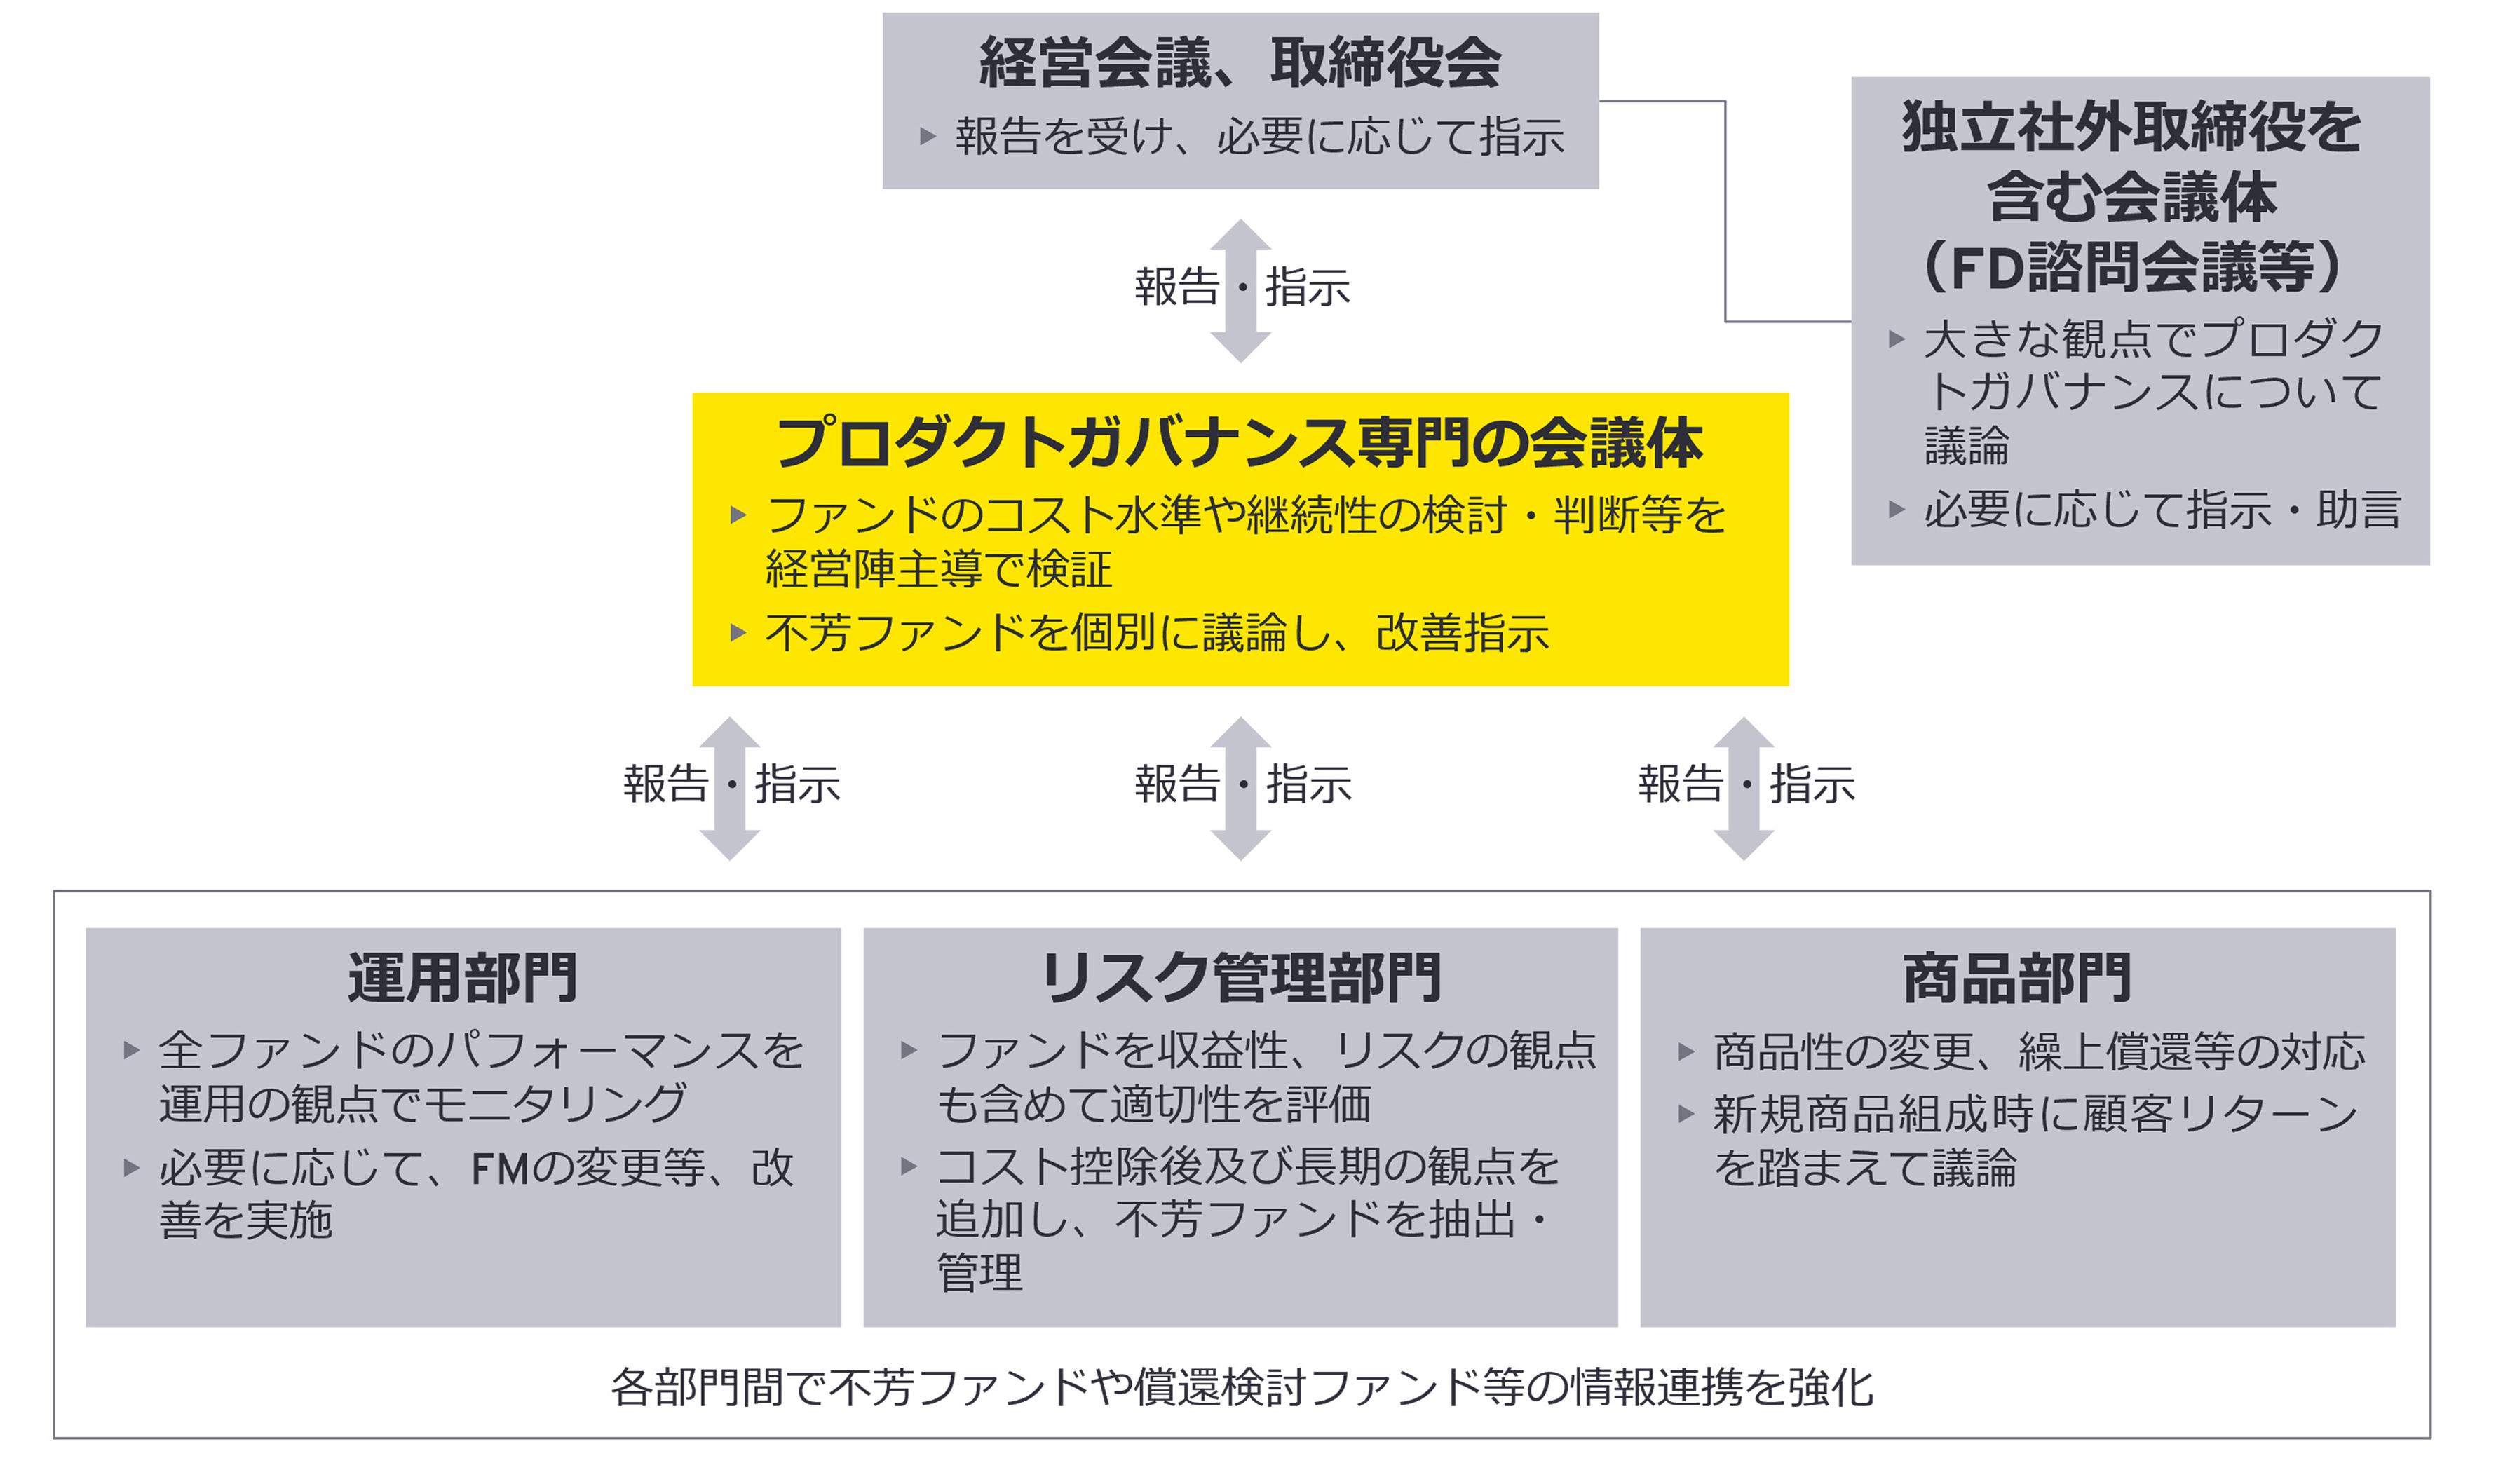 【図3】プロダクトガバナンス体制の例